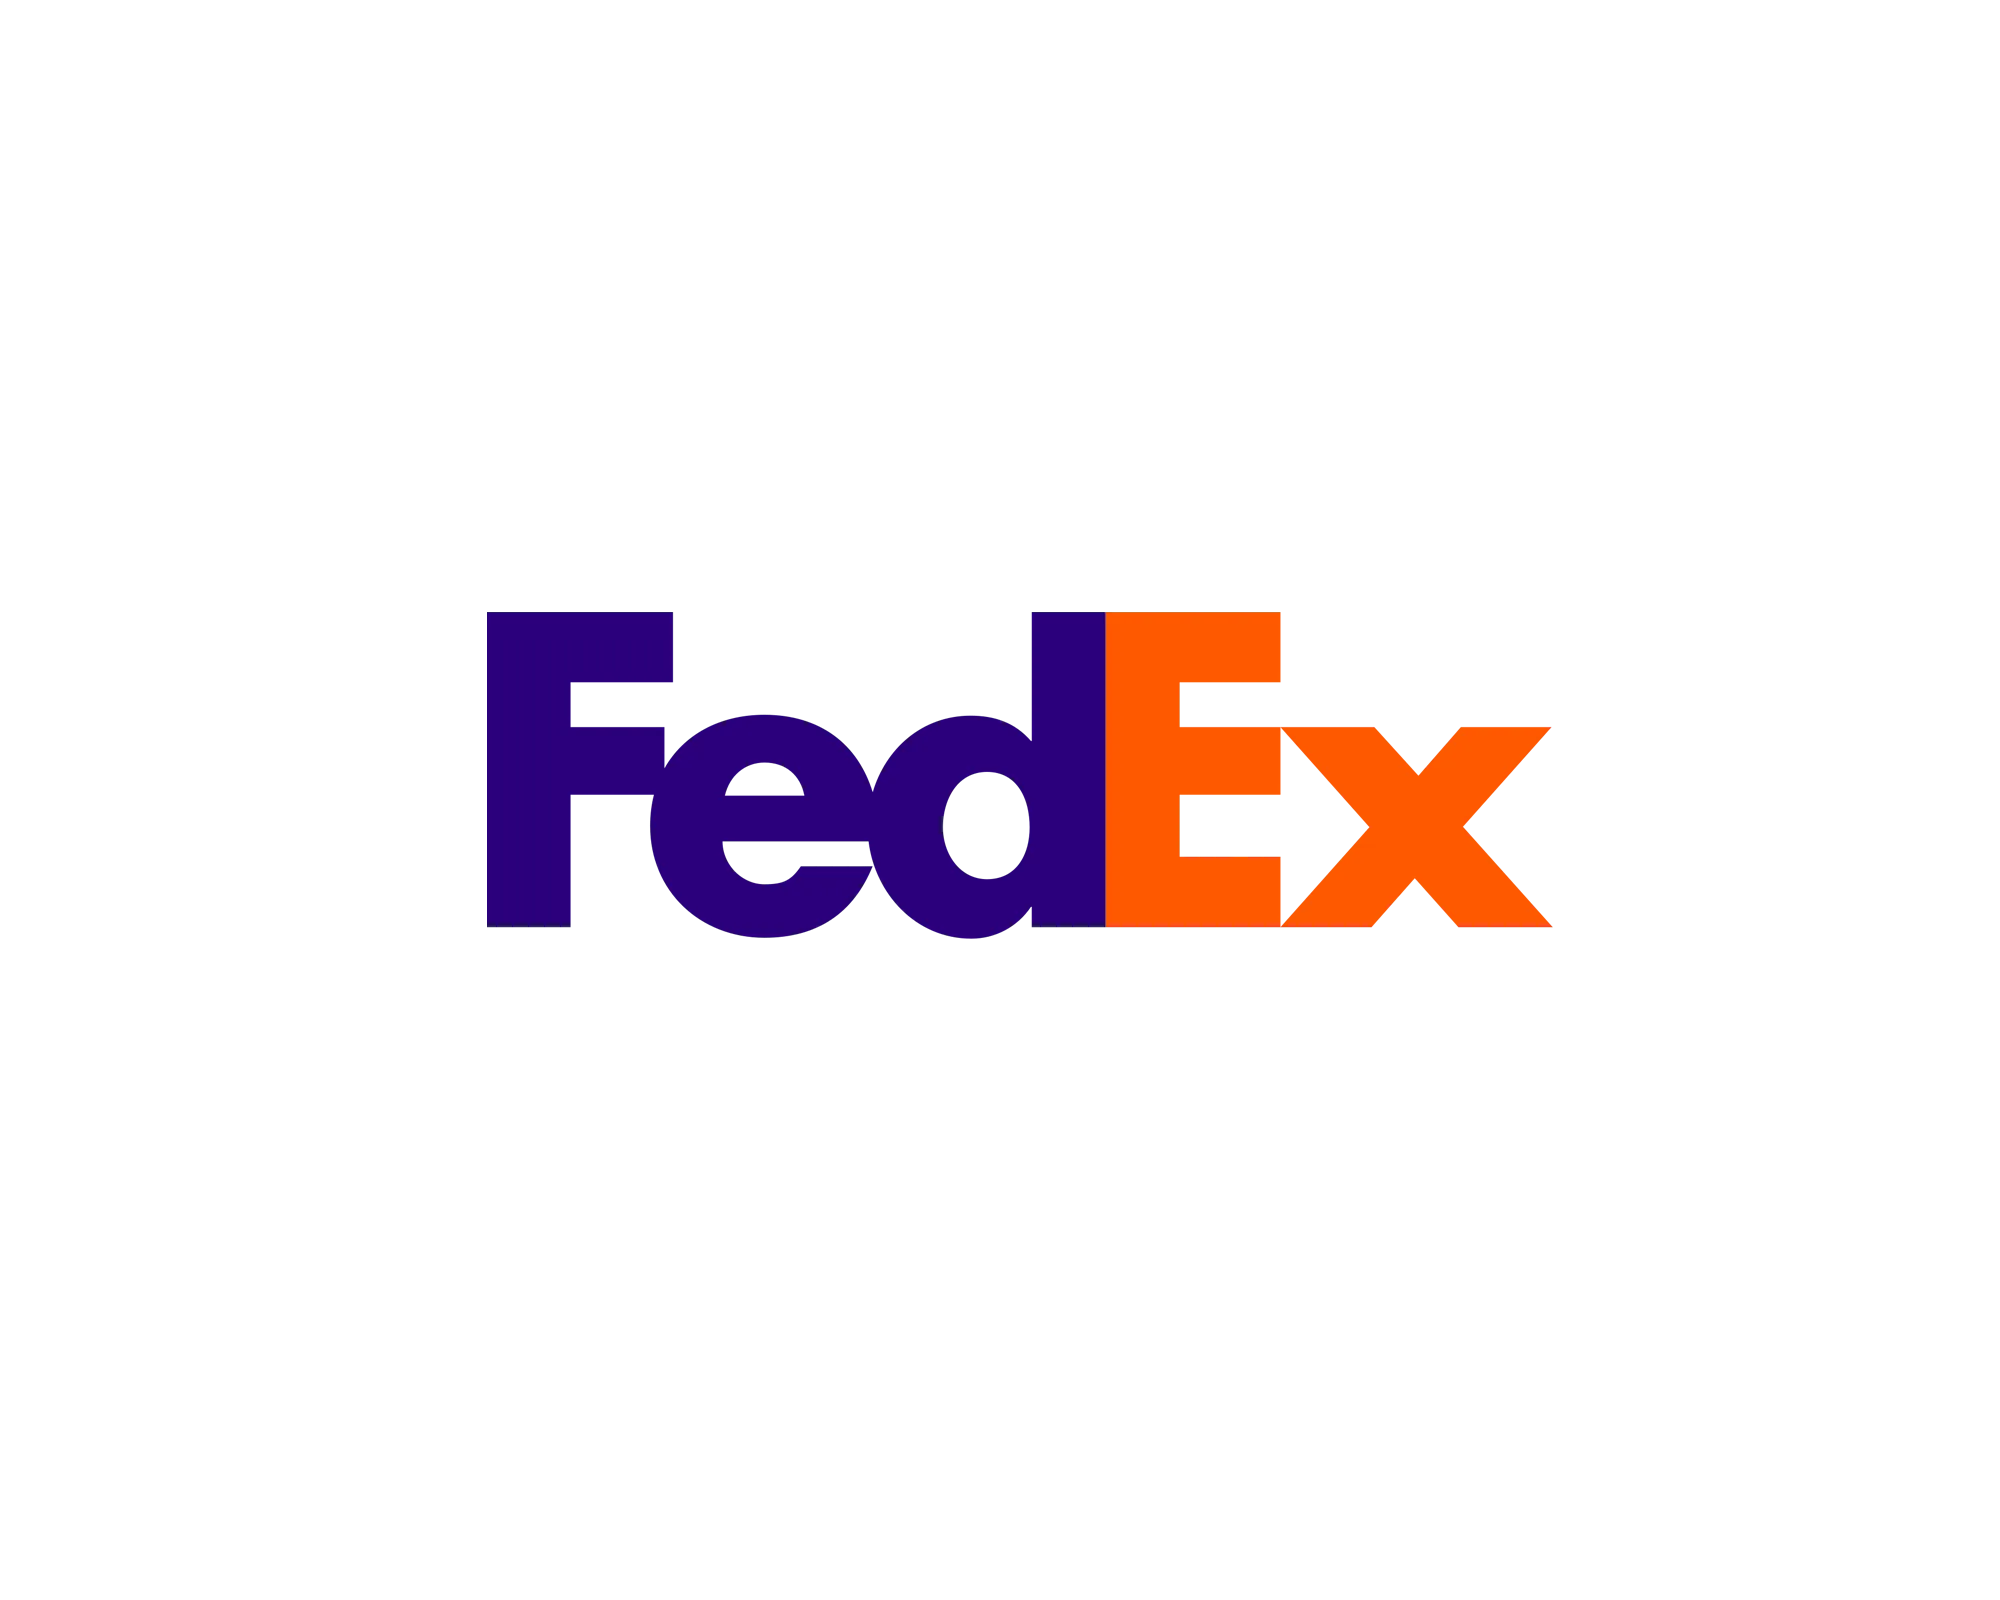 Логотип FedEx